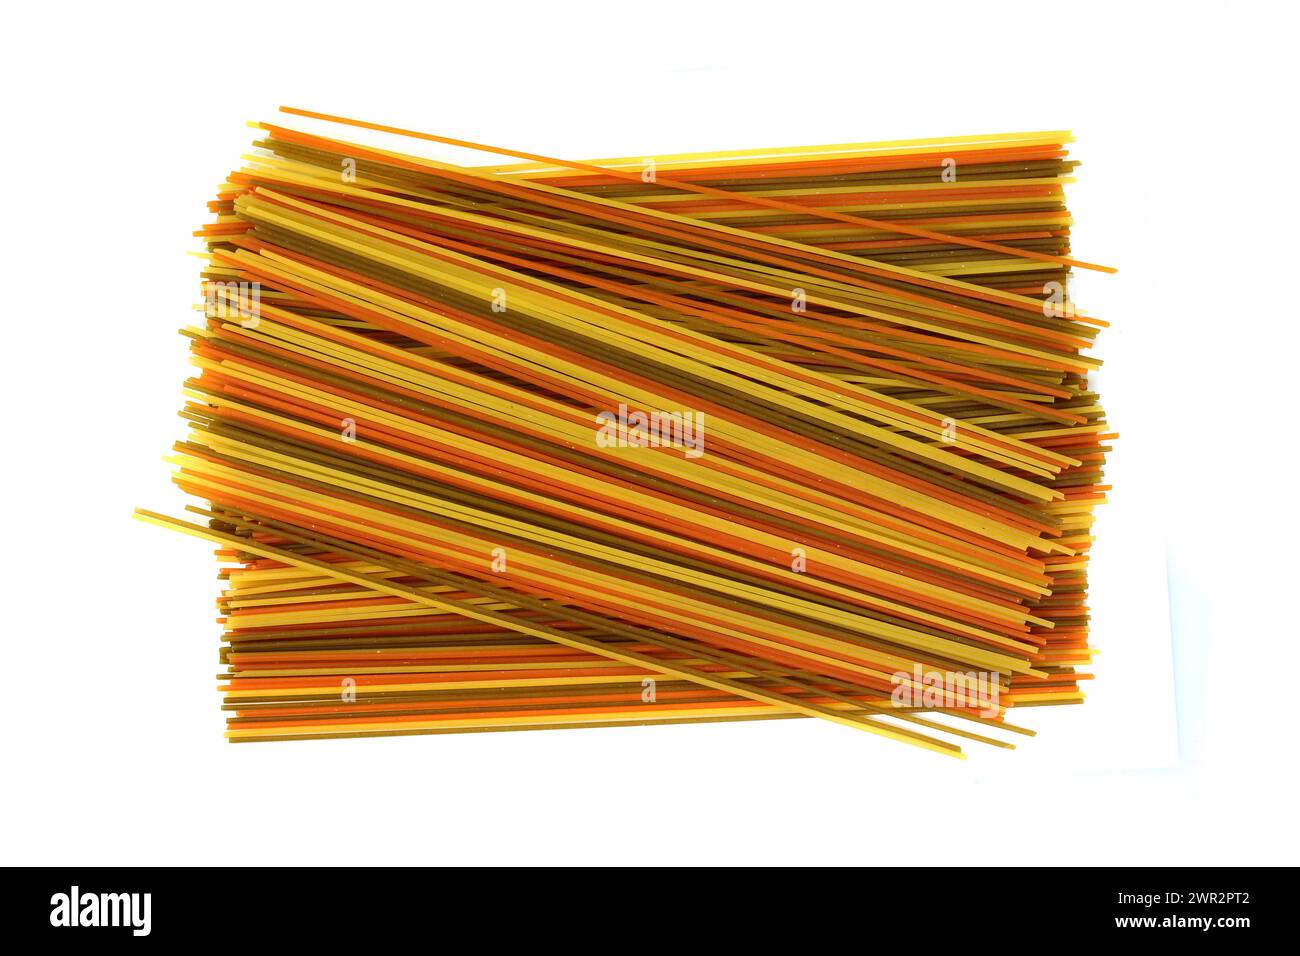 pasta lunga e multicolore, spaghetti aromatizzati isolati su fondo bianco. Fettuccine secche crude legate in un fascio isolato su un bianco. Foto Stock